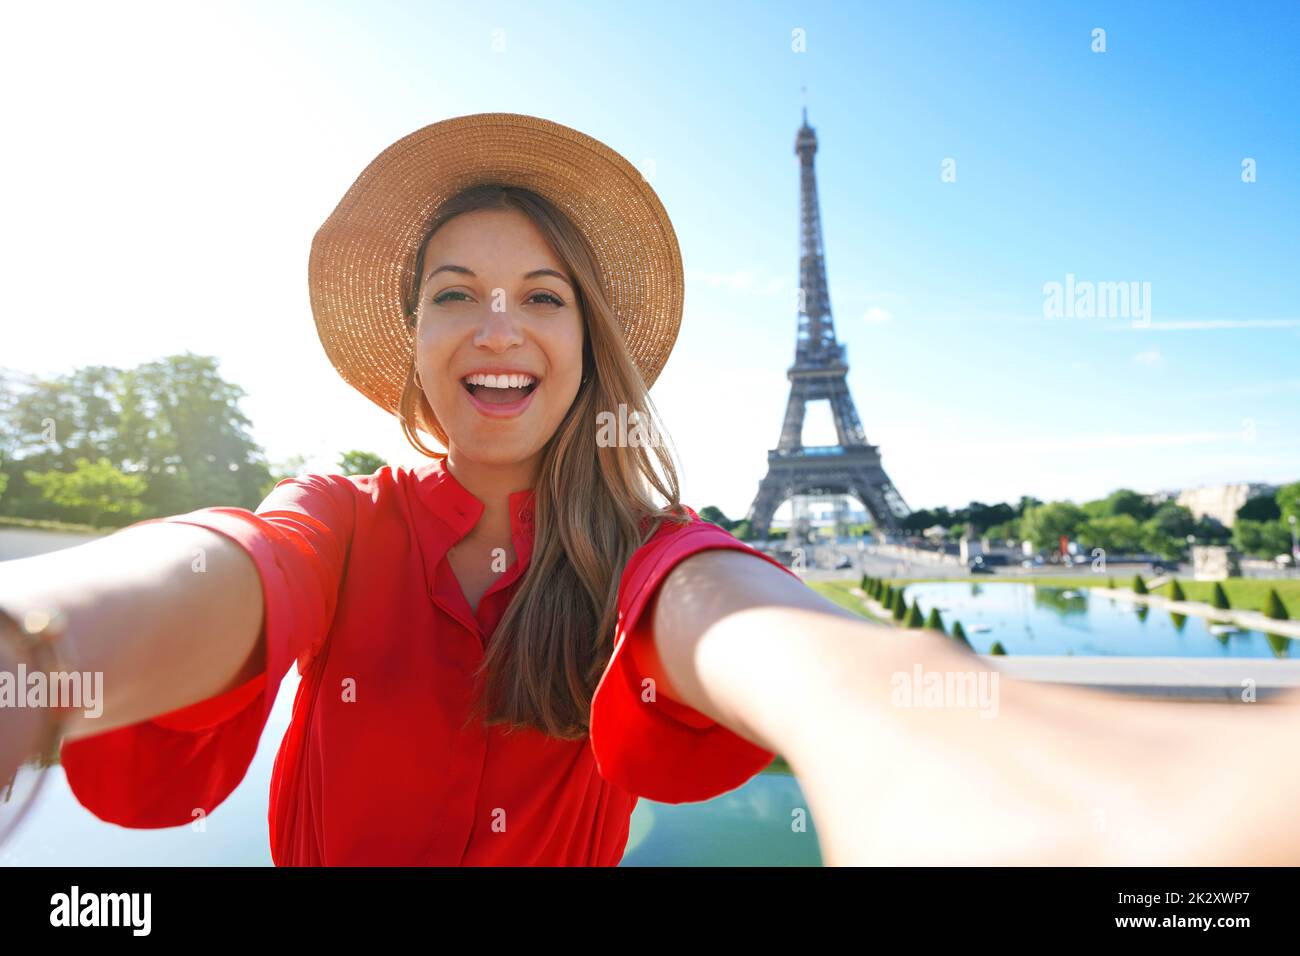 Aufgeregt Mode Frau mit rotem Kleid und Hut hat Spaß machen Selbstportrait mit Eiffelturm auf dem Hintergrund in Paris, Frankreich. Stockfoto